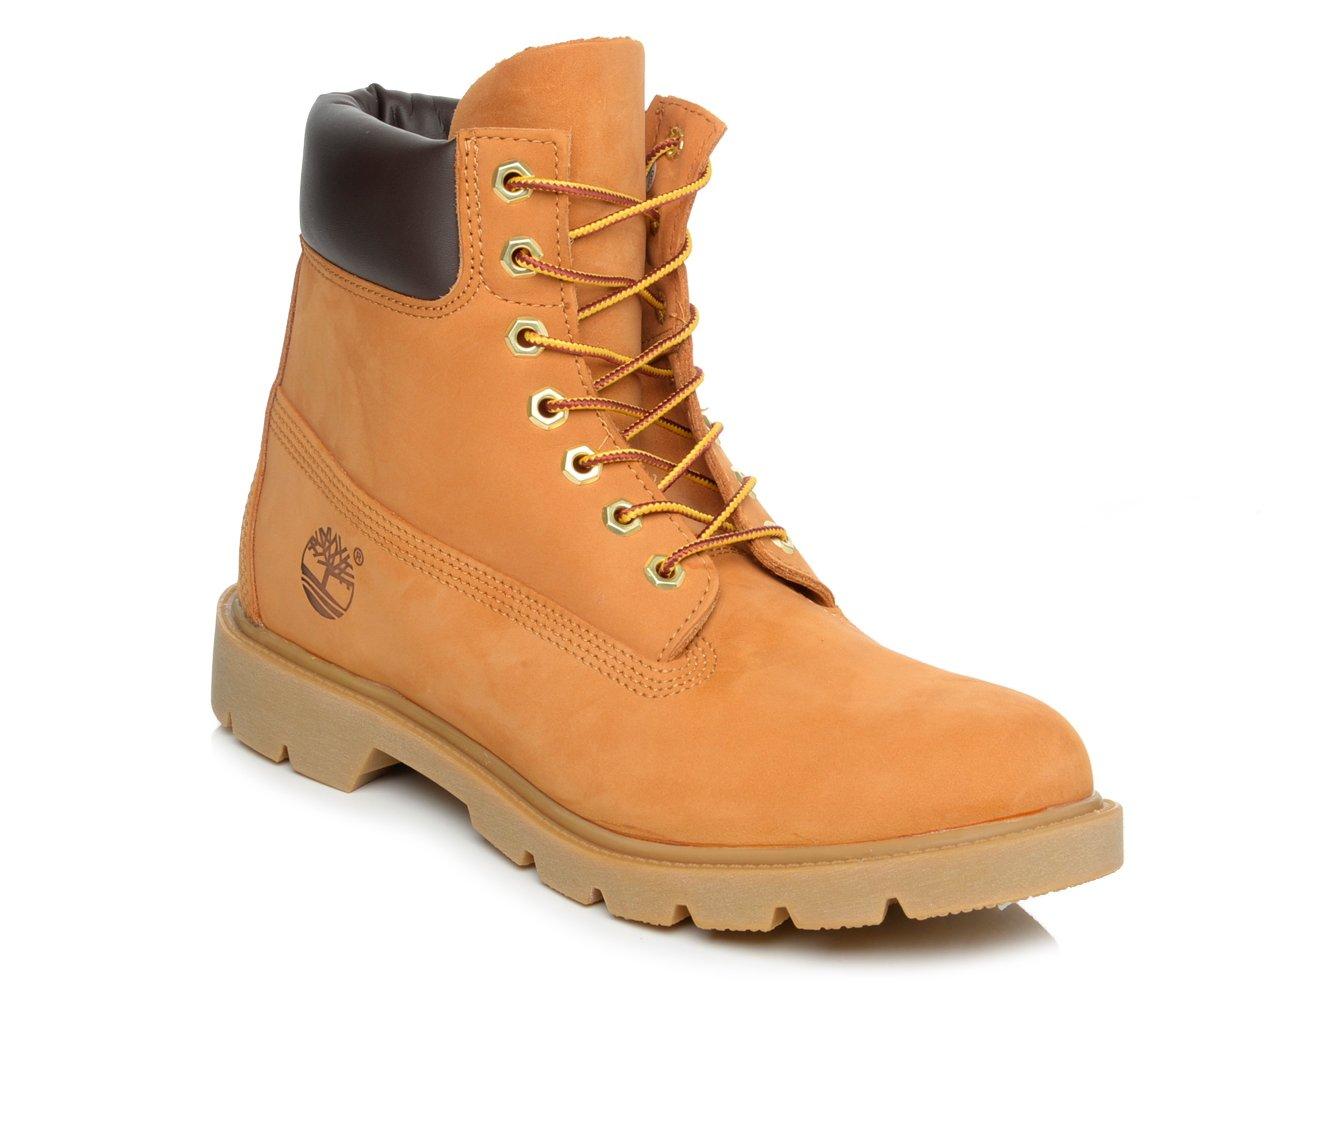 Timberland Men's 6 Premium Waterproof Boots